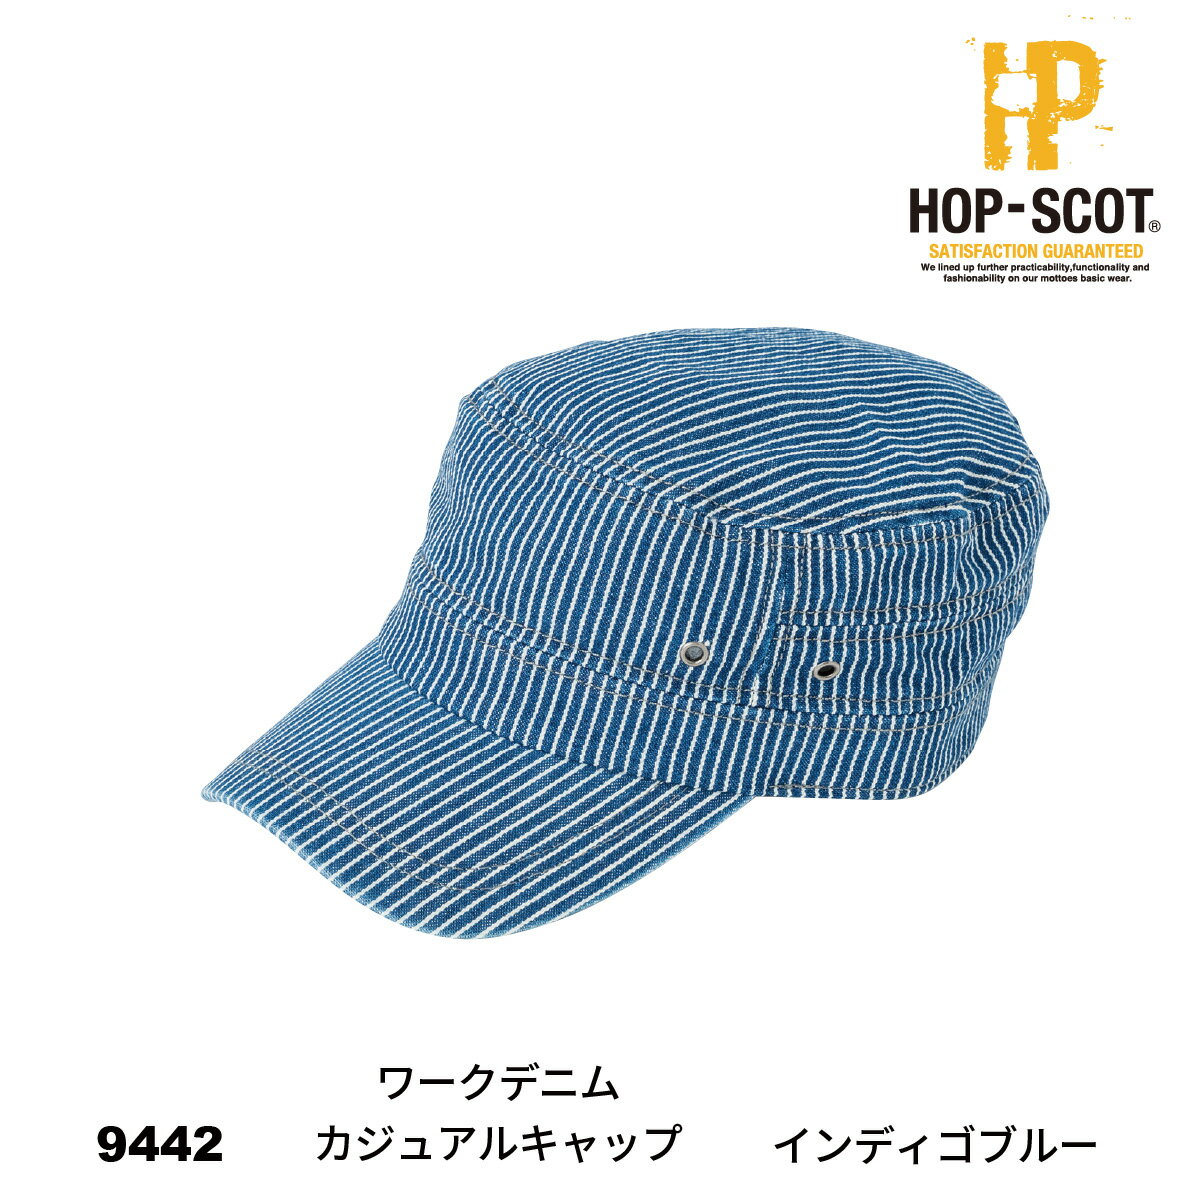 【作業服 帽子】 HOP-SCOT 9442 ワークデニムカジュアルキャップ 9440series 中国産業 作業着 HOP-SCOT ホップスコット 帽子 キャップ ワークデニムカジュアルキャップ オールシーズン ワークウェア